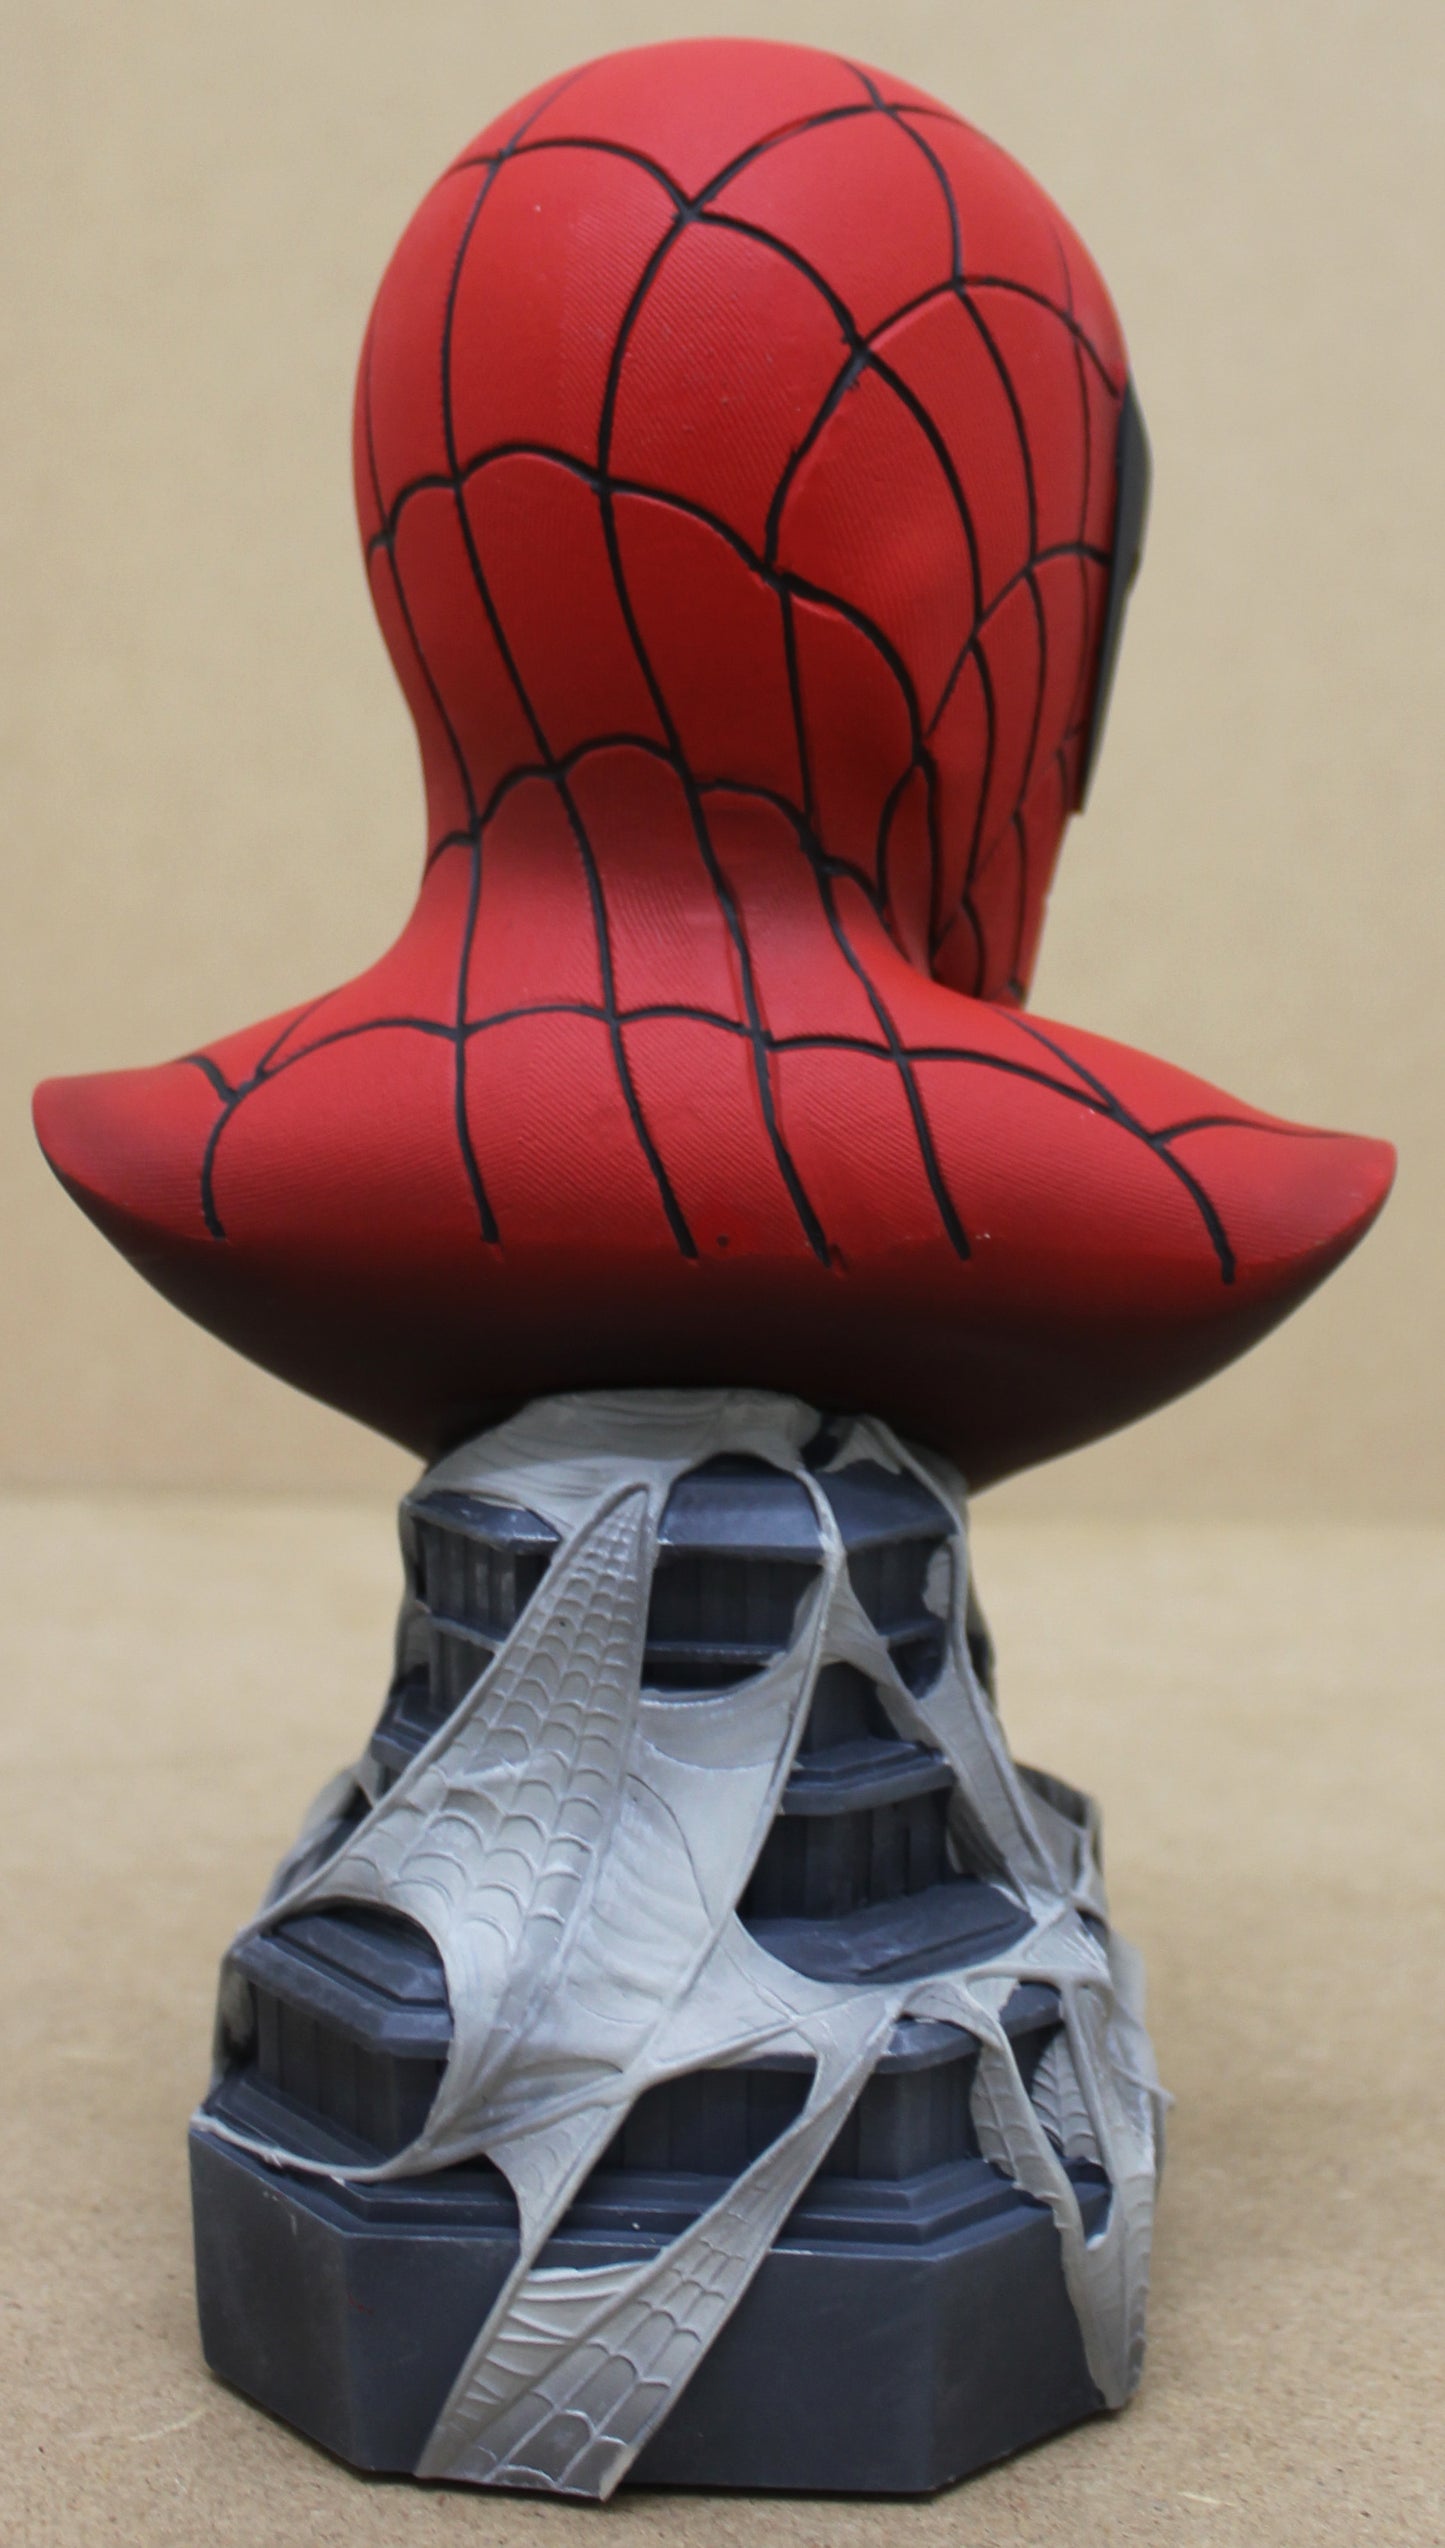 Marvel Legends 1/2 Scale Spider-Man Resin Büste